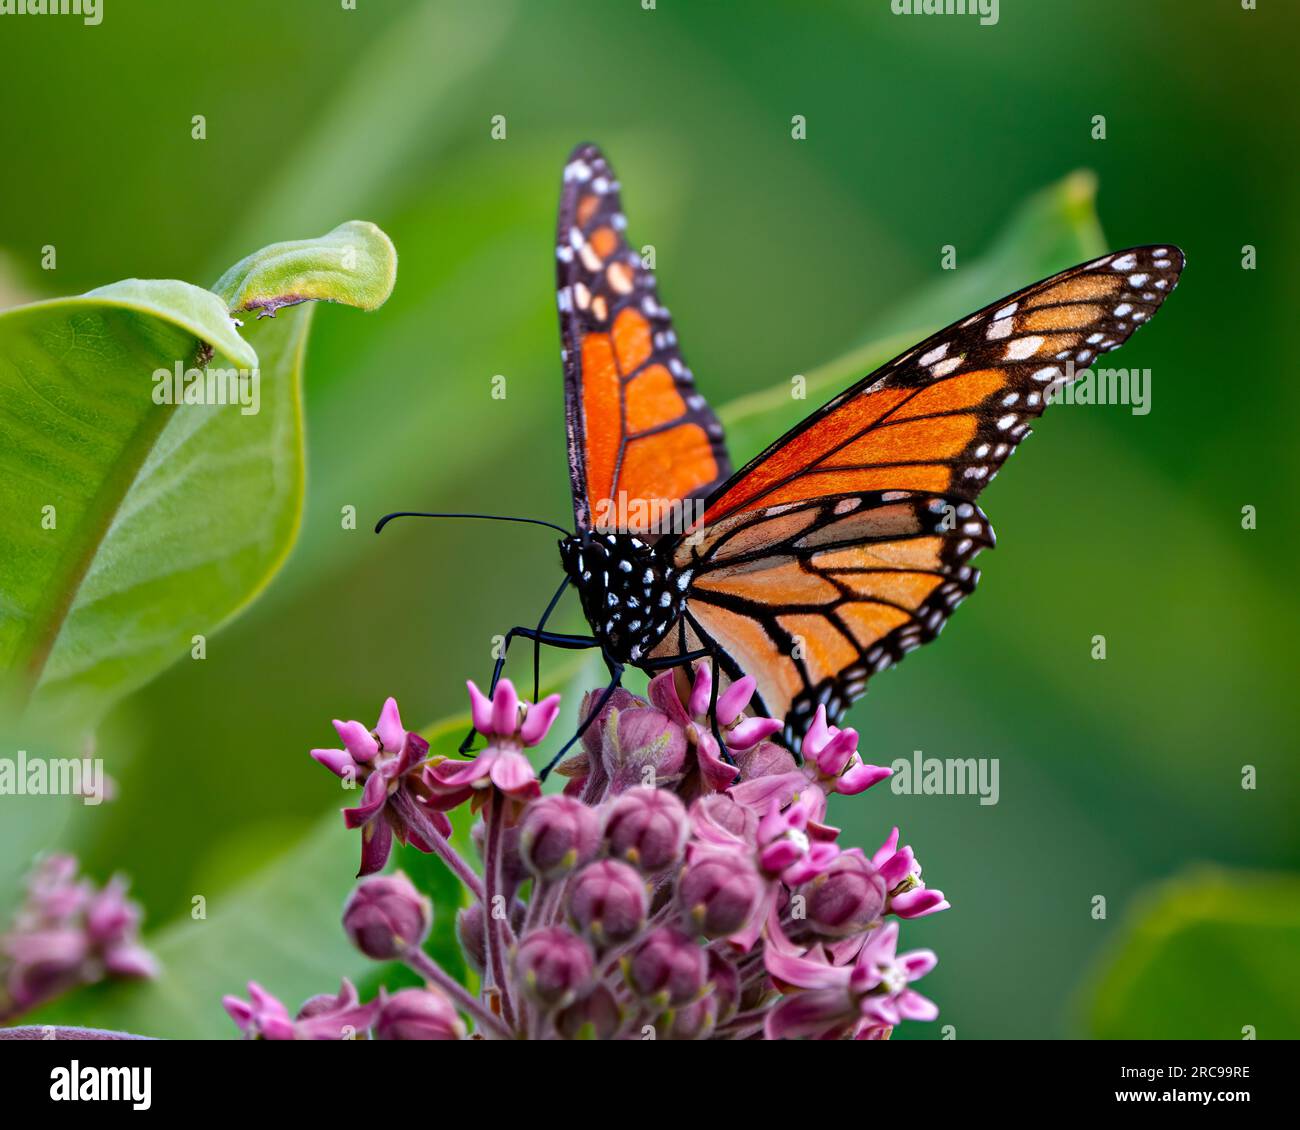 Mariposa monarca sorbiendo o bebiendo néctar de una planta de algodoncillo con un fondo verde borroso en su entorno y hábitat circundante. Mariposa. Foto de stock